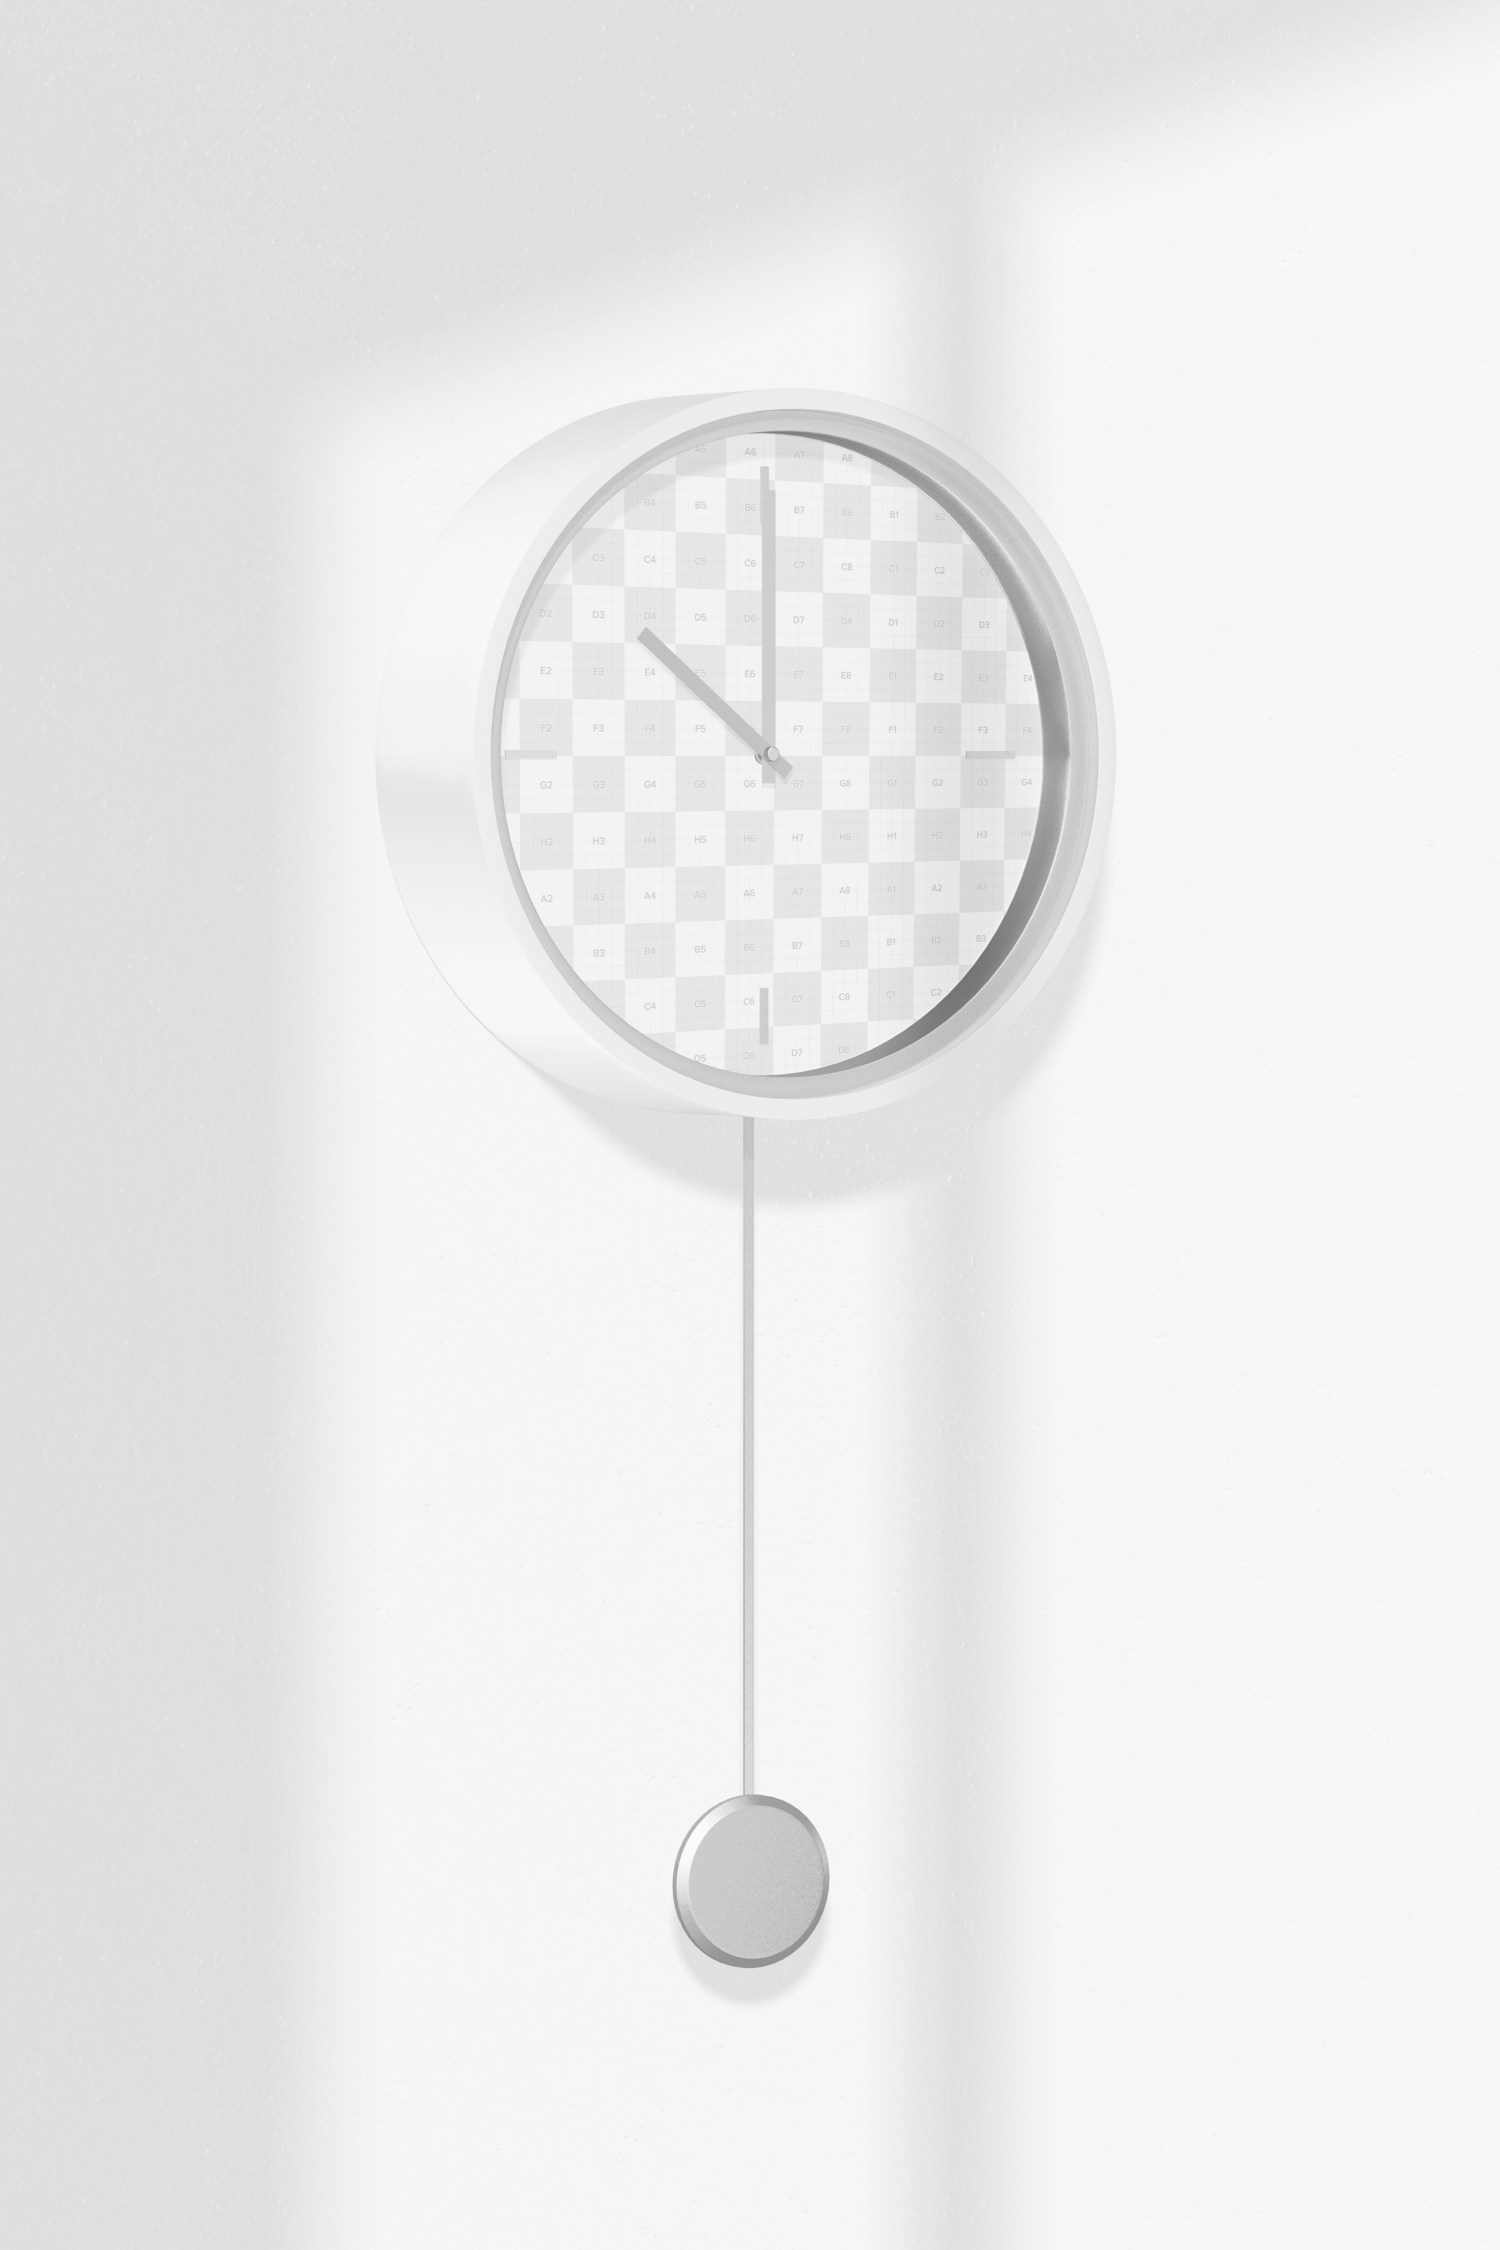 Pendulum Wall Clock Mockup